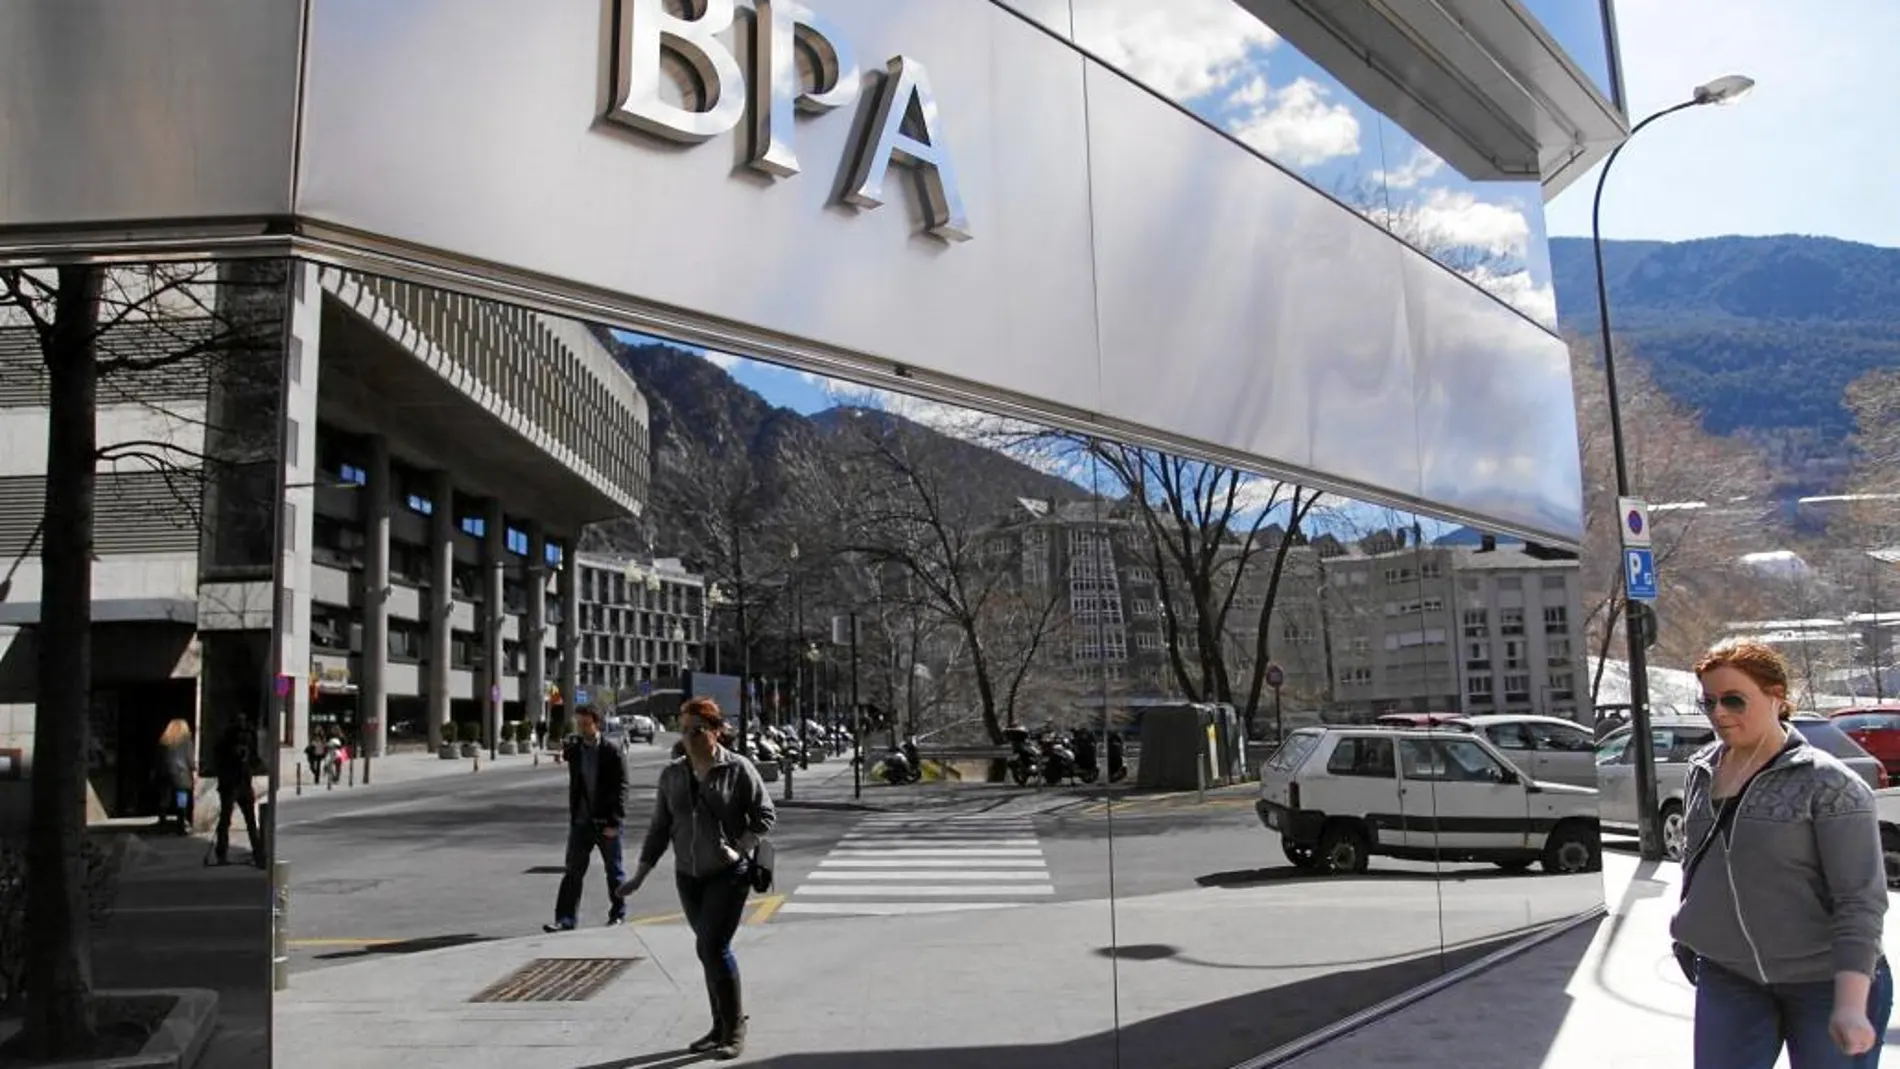 Oficina de Banca Privada de Andorra (BPA) en Andorra la Vieja, capital del Principado